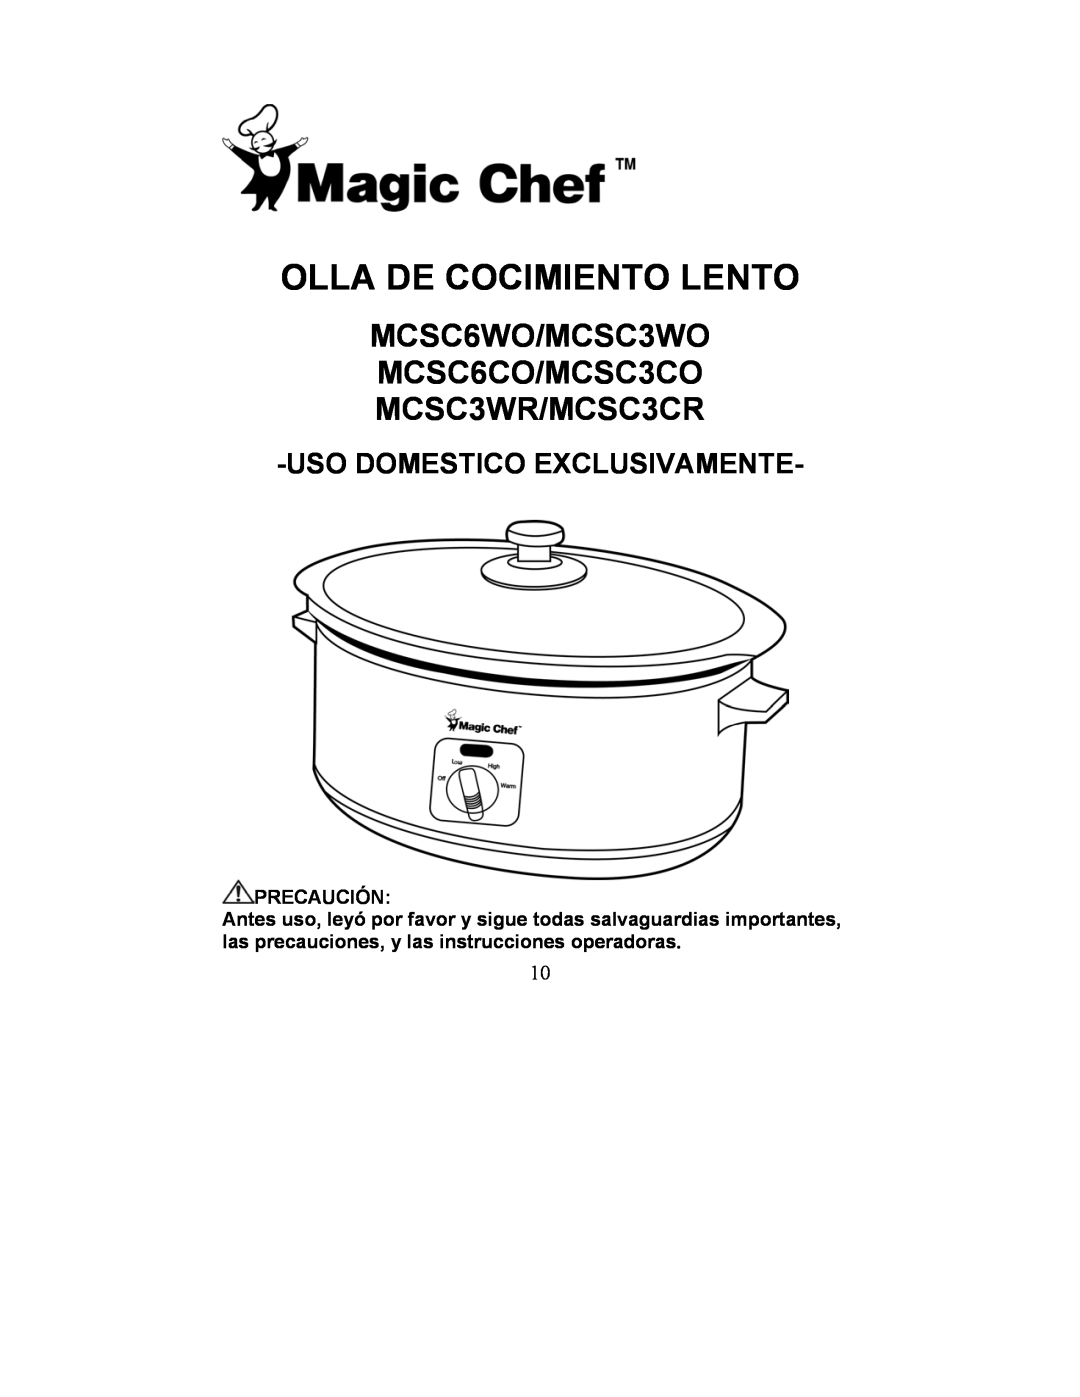 Magic Chef MCSC3WRs Olla De Cocimiento Lento, Usodomestico Exclusivamente, MCSC6WO/MCSC3WO MCSC6CO/MCSC3CO MCSC3WR/MCSC3CR 